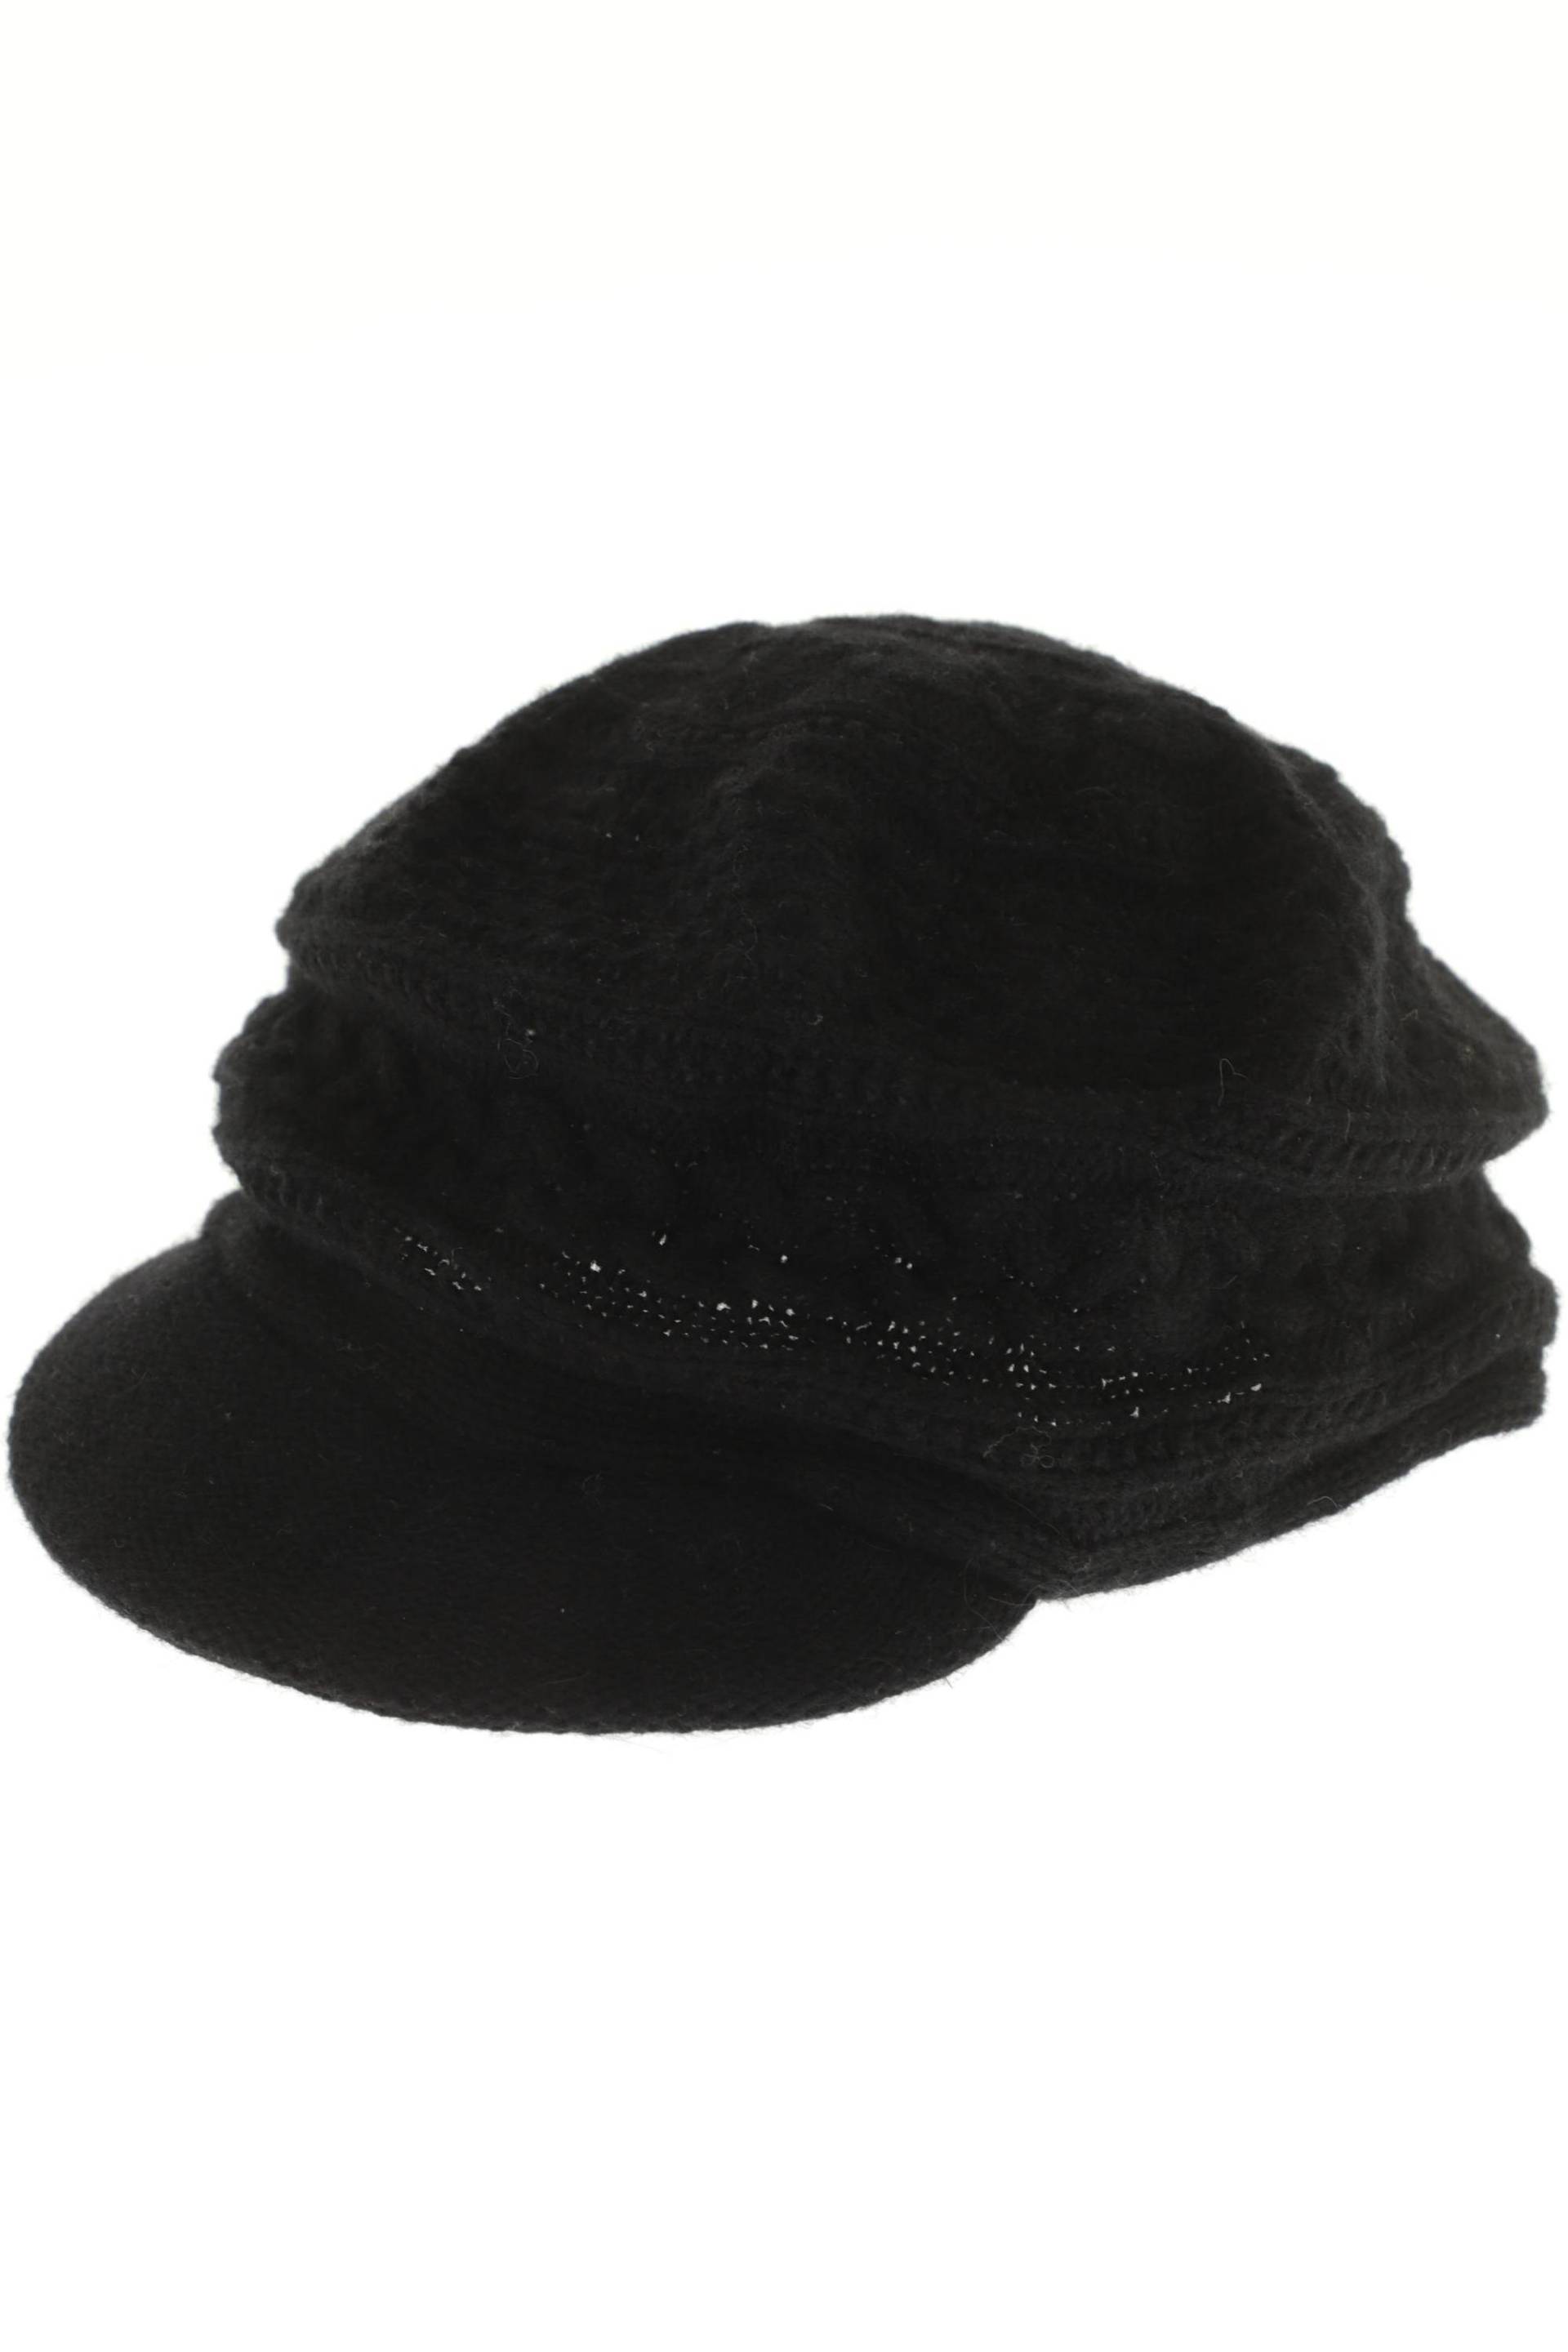 Seeberger Damen Hut/Mütze, schwarz von Seeberger